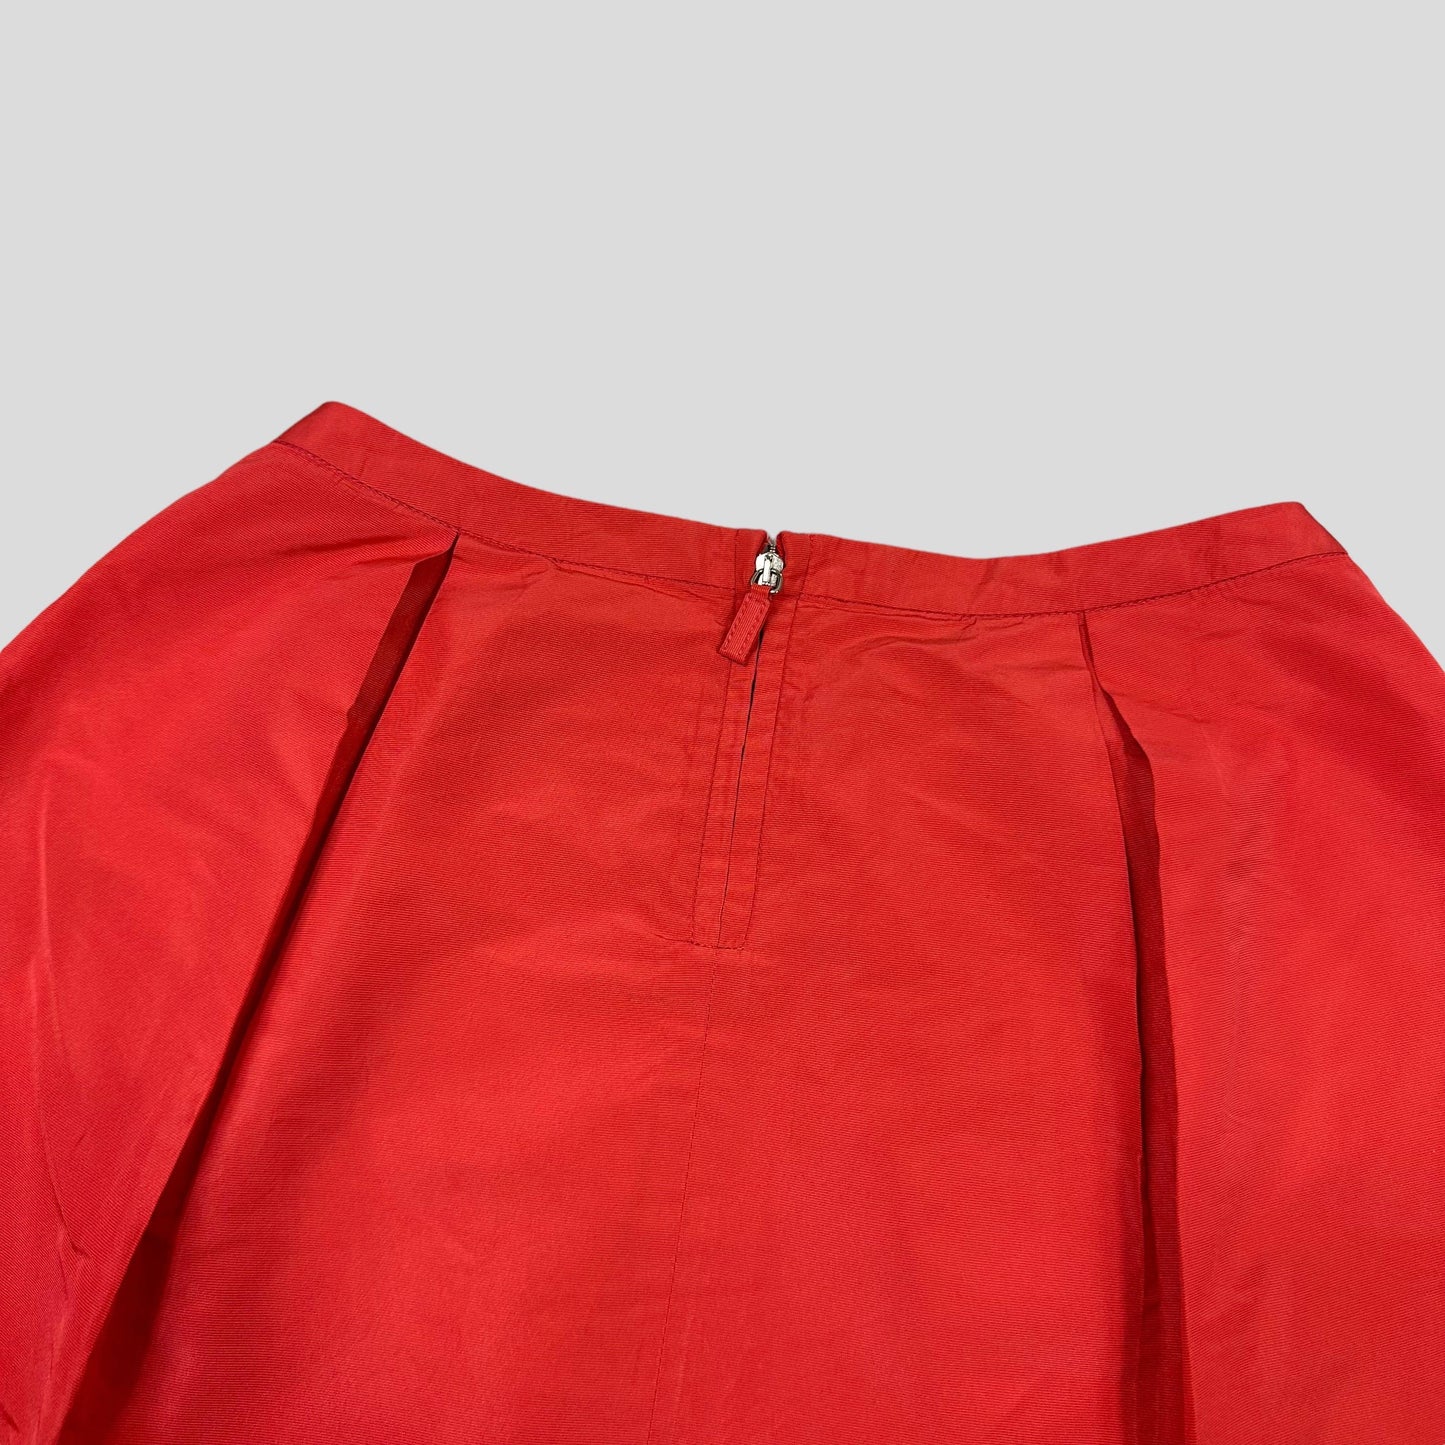 Miu Miu 00’s Nylon Skirt - IT38 - Known Source